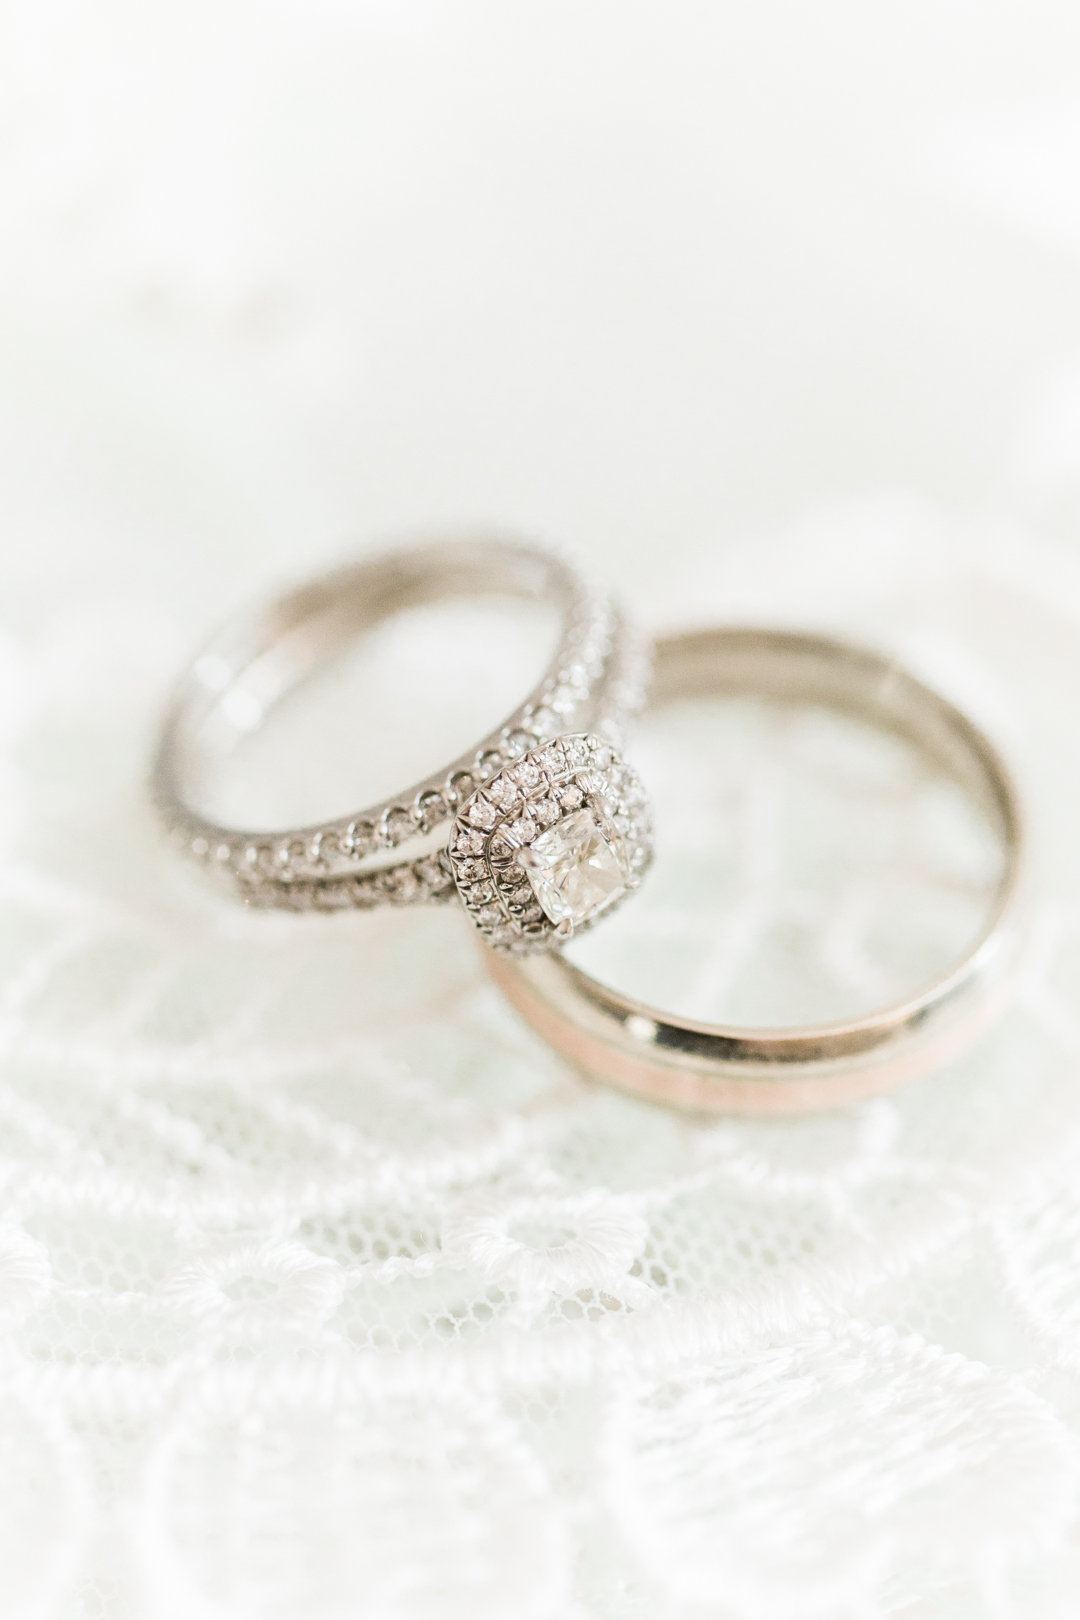 Tiffany's Wedding Ring Photo